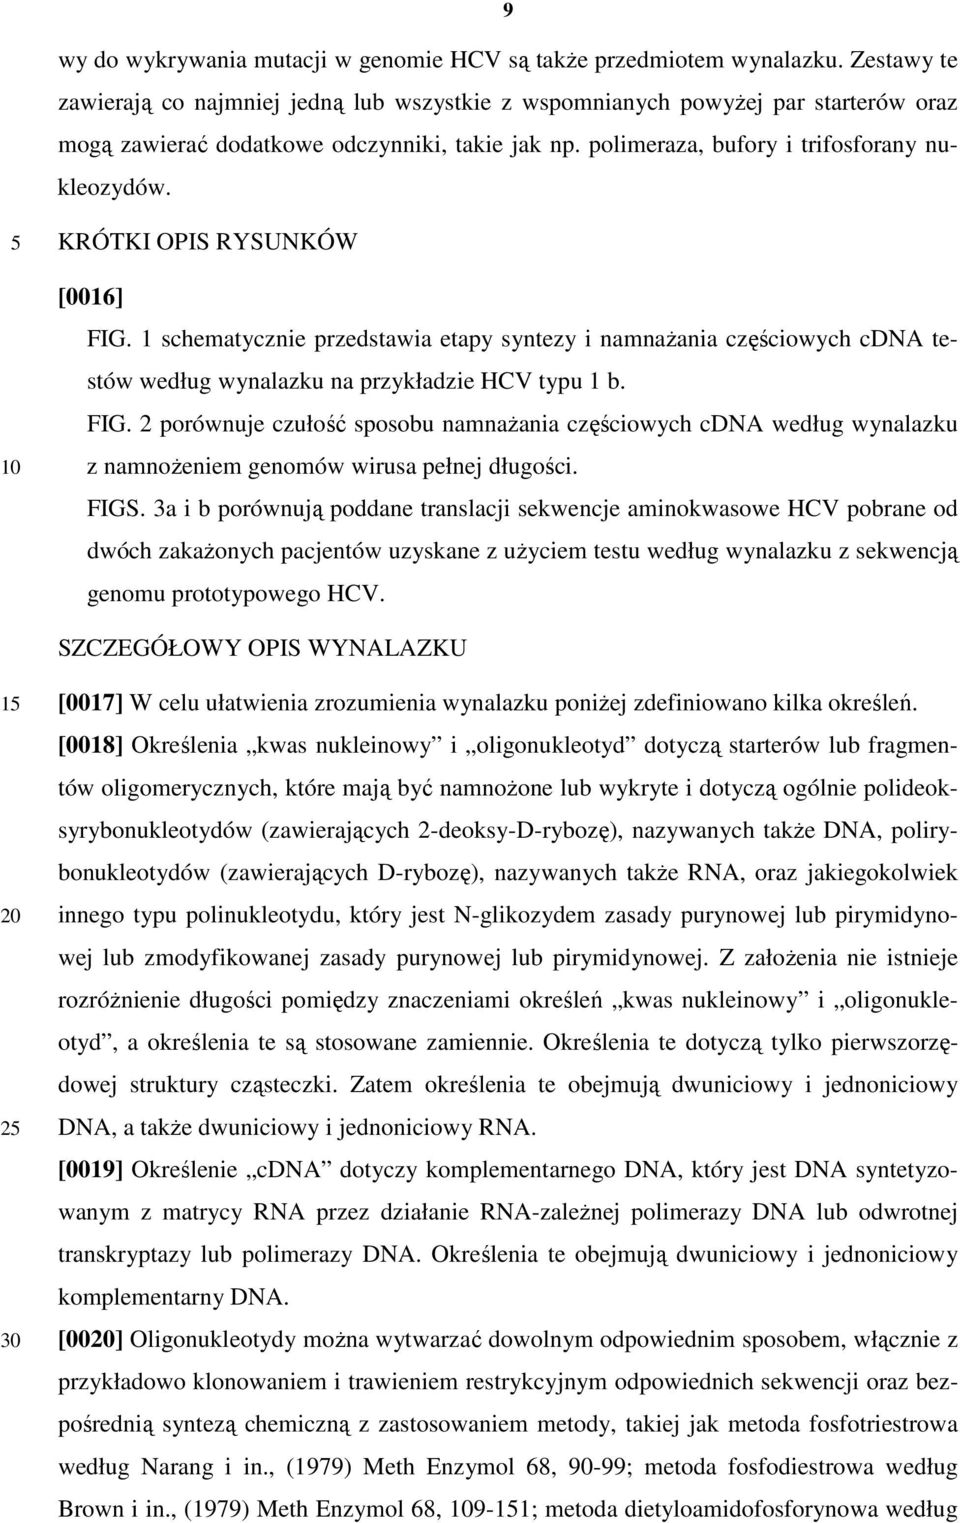 10 KRÓTKI OPIS RYSUNKÓW [0016] FIG. 1 schematycznie przedstawia etapy syntezy i namnaŝania częściowych cdna testów według wynalazku na przykładzie HCV typu 1 b. FIG. 2 porównuje czułość sposobu namnaŝania częściowych cdna według wynalazku z namnoŝeniem genomów wirusa pełnej długości.